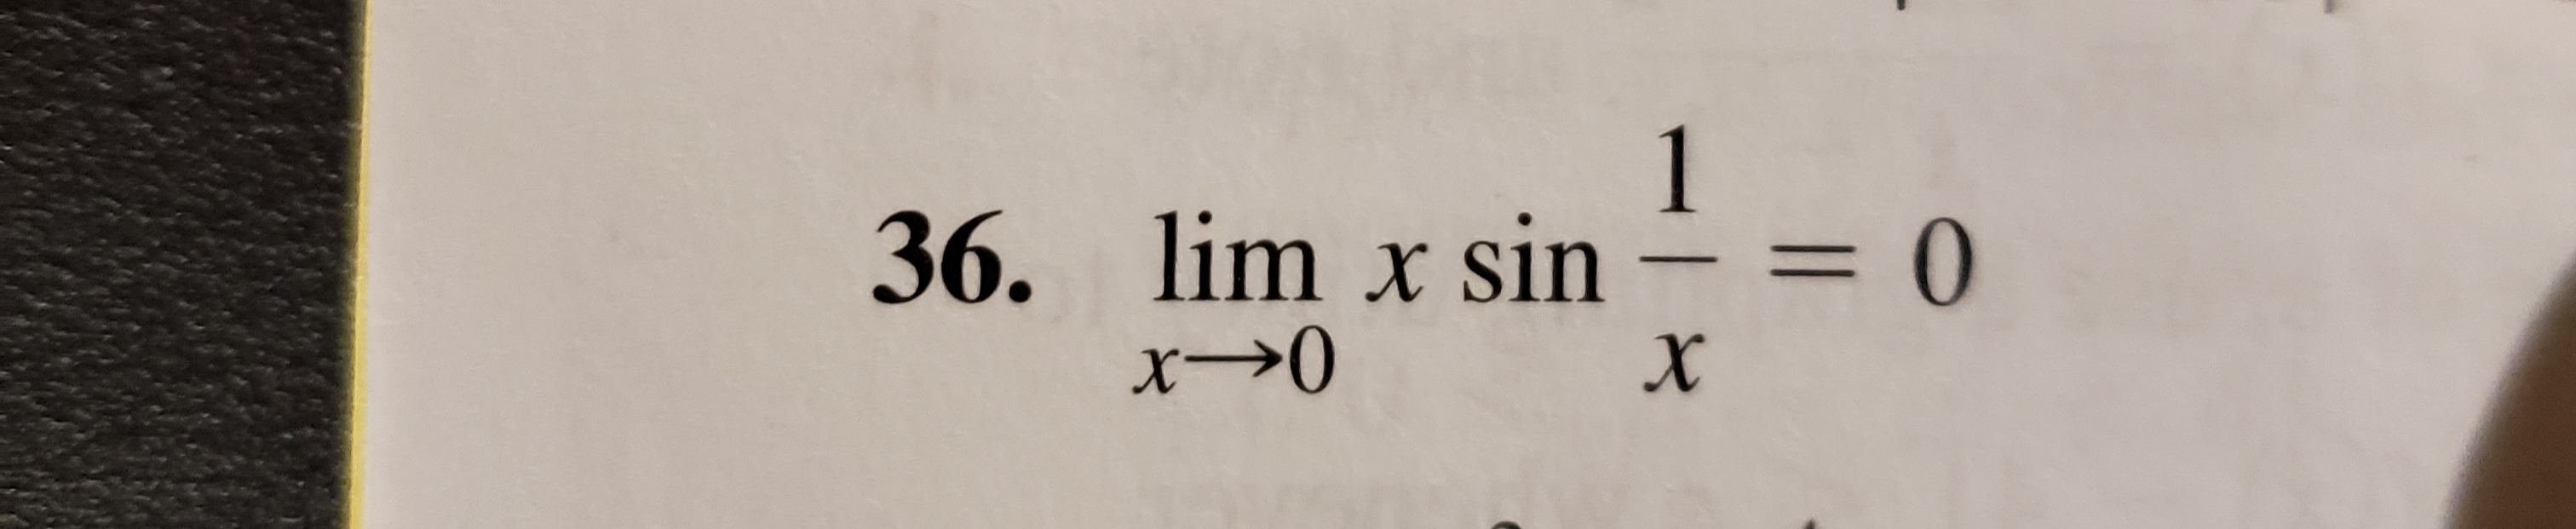 1
= 0
36. lim x sin
x-0
